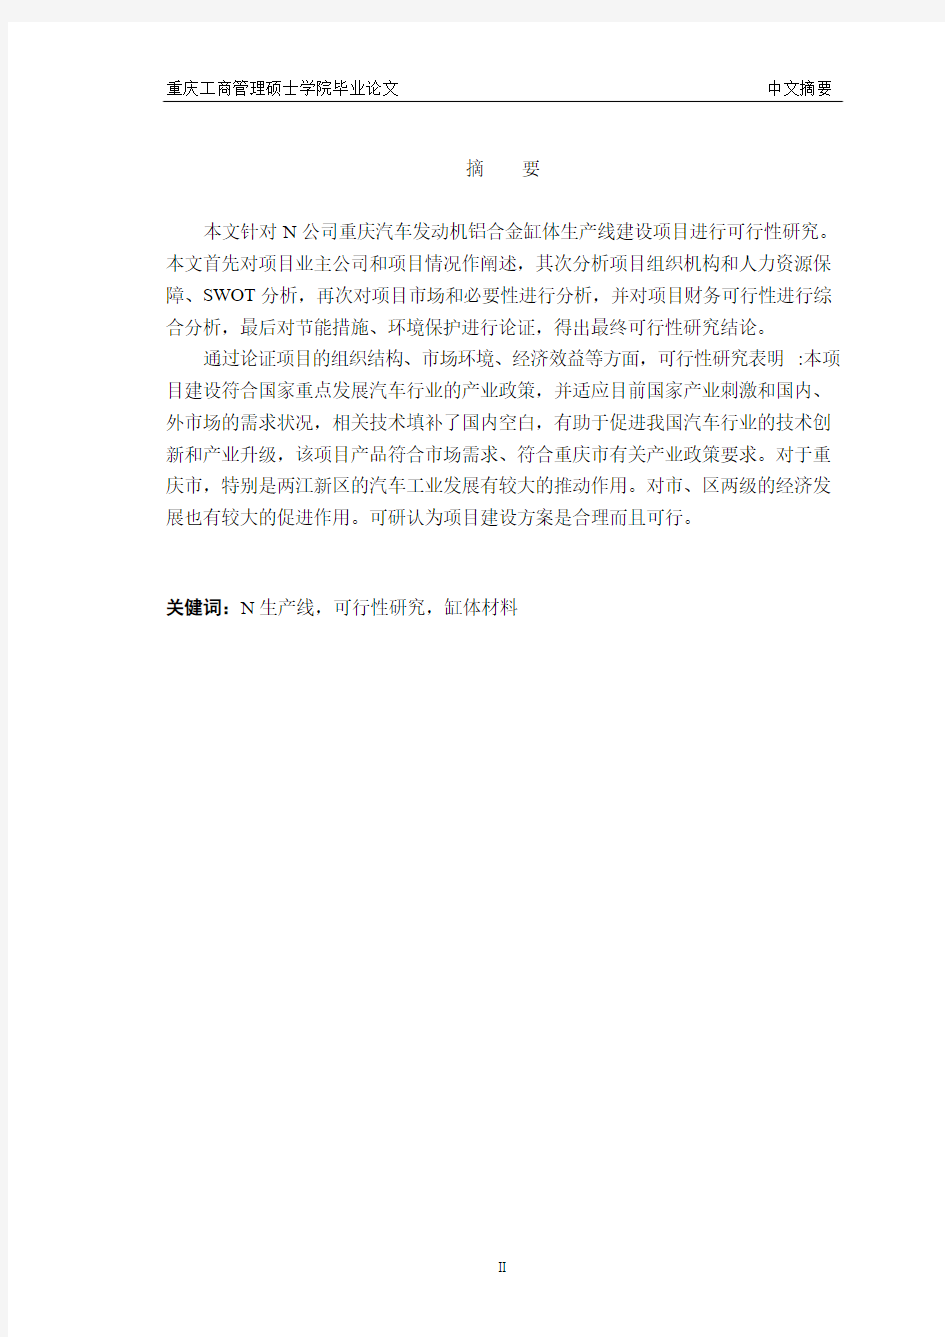 重庆汽车发动机铝合金缸体生产线建设项目可行性研究报告